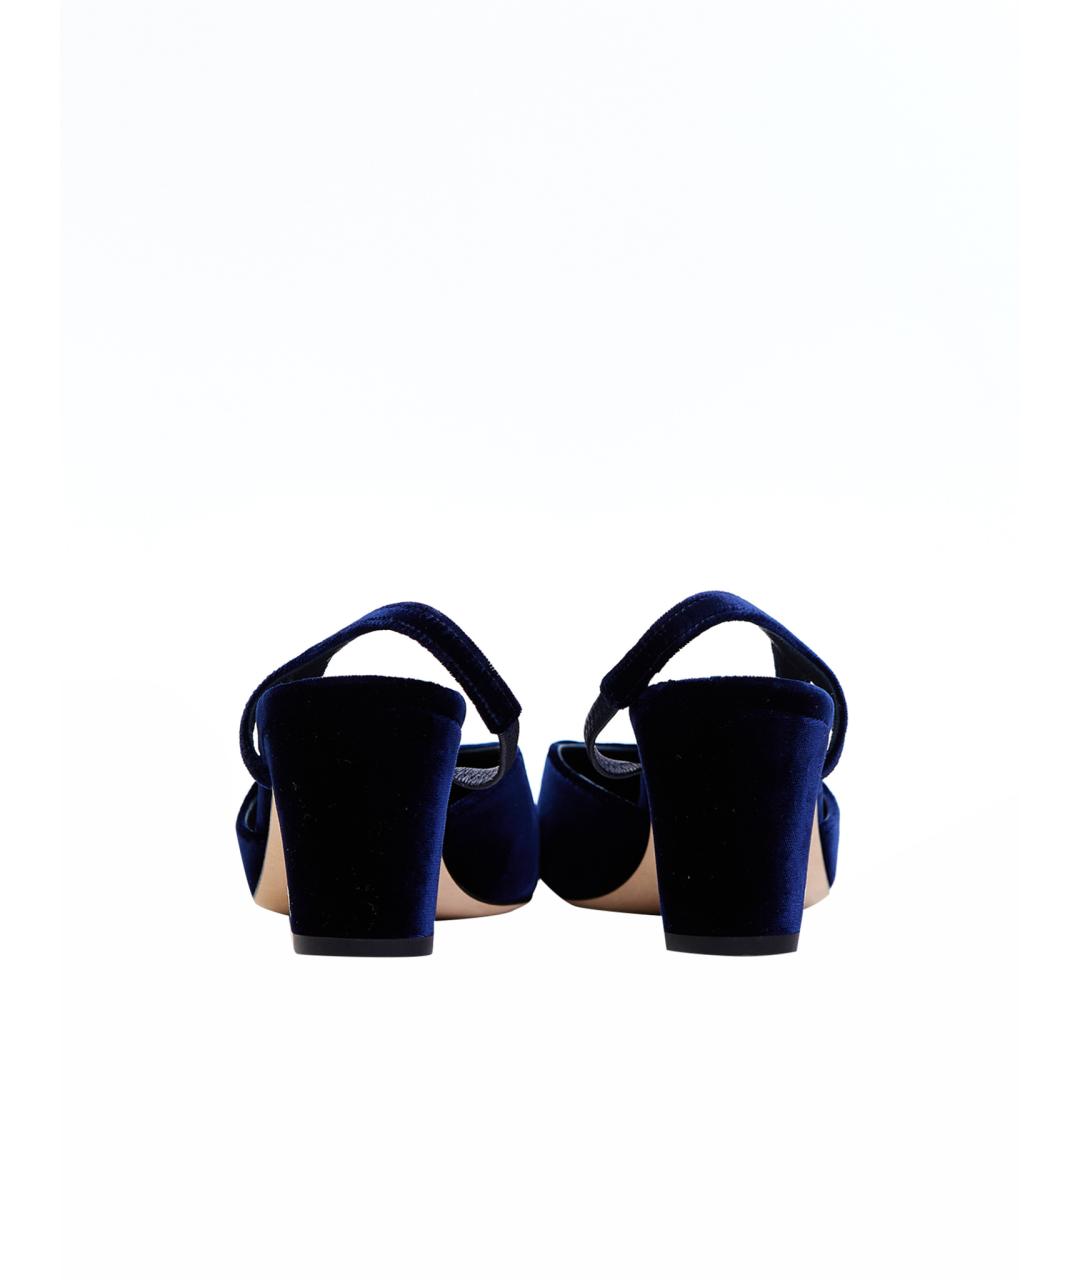 CHANEL PRE-OWNED Темно-синие текстильные лодочки на низком каблуке, фото 2